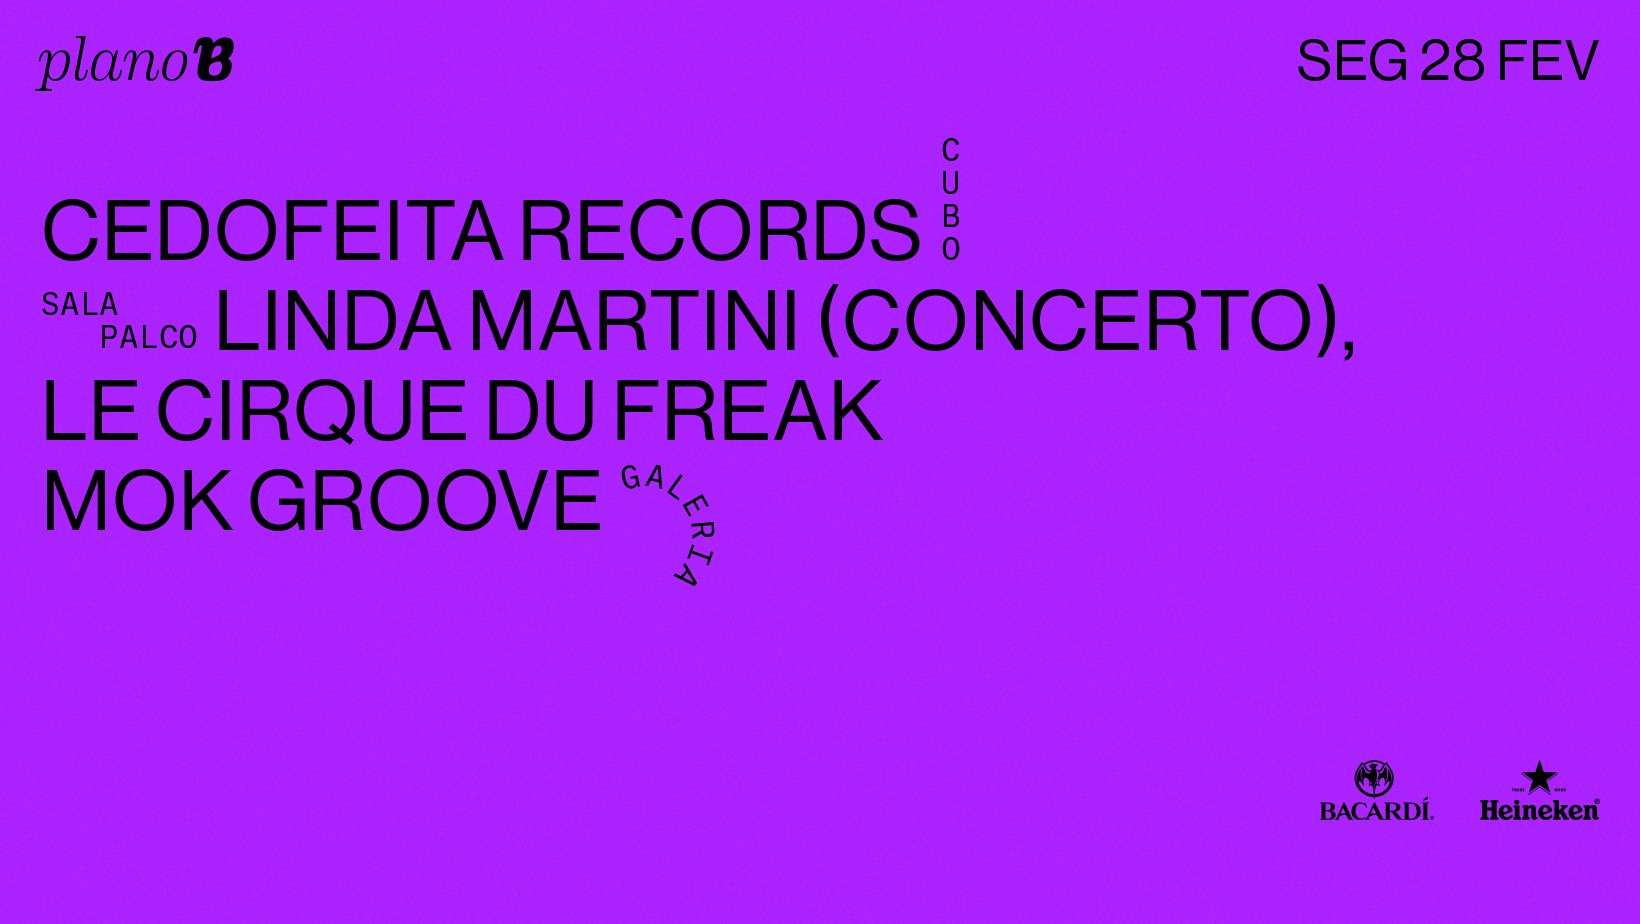 Linda Martini, Cedofeita Records, Le Cirque du Freak